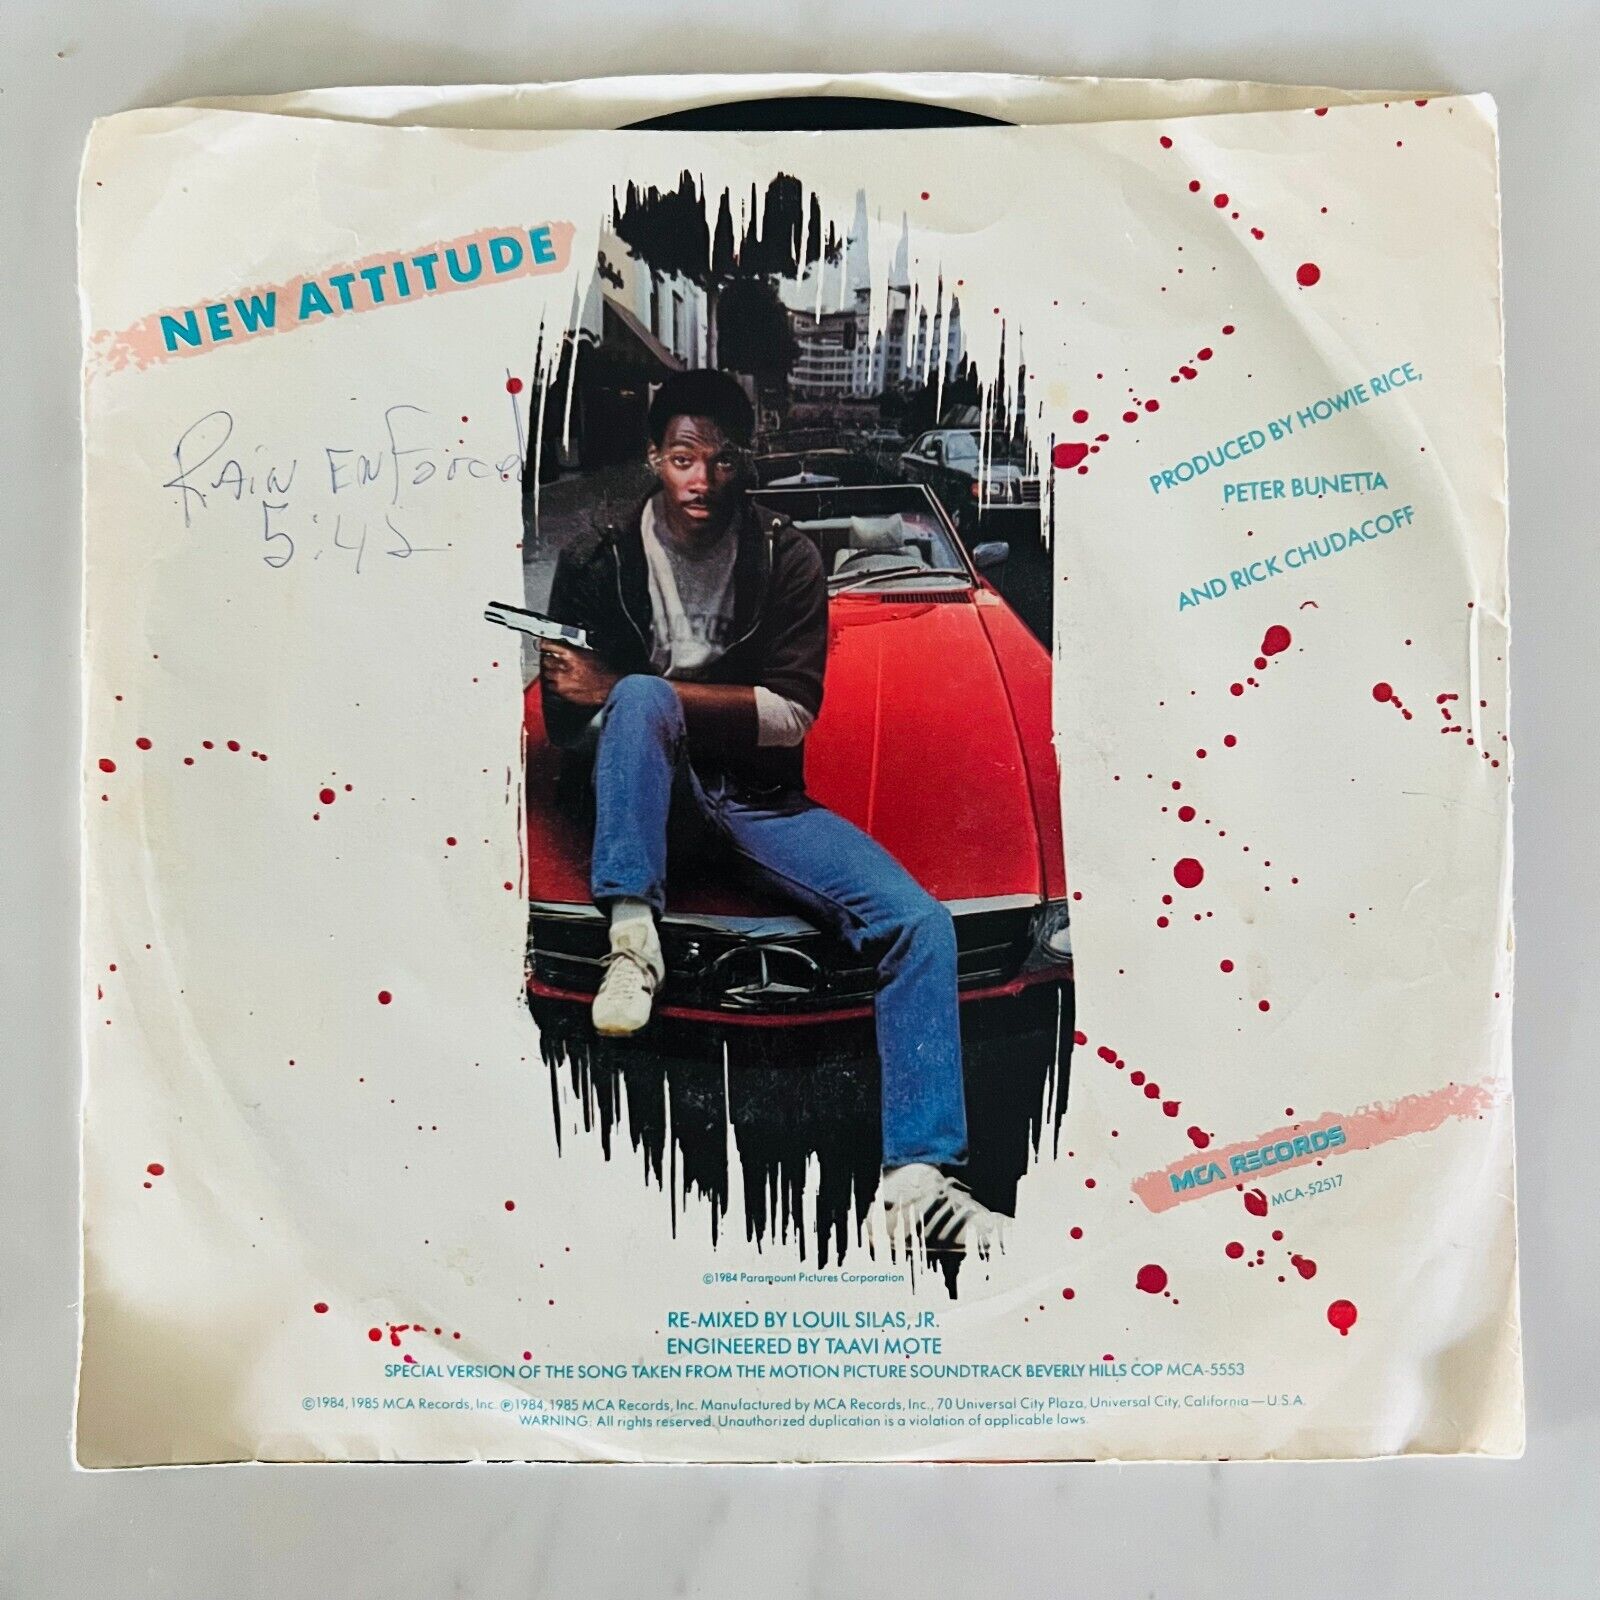 Patti LaBelle- Single 45 rpm Record - New Attitude - Beverly Hills Cop